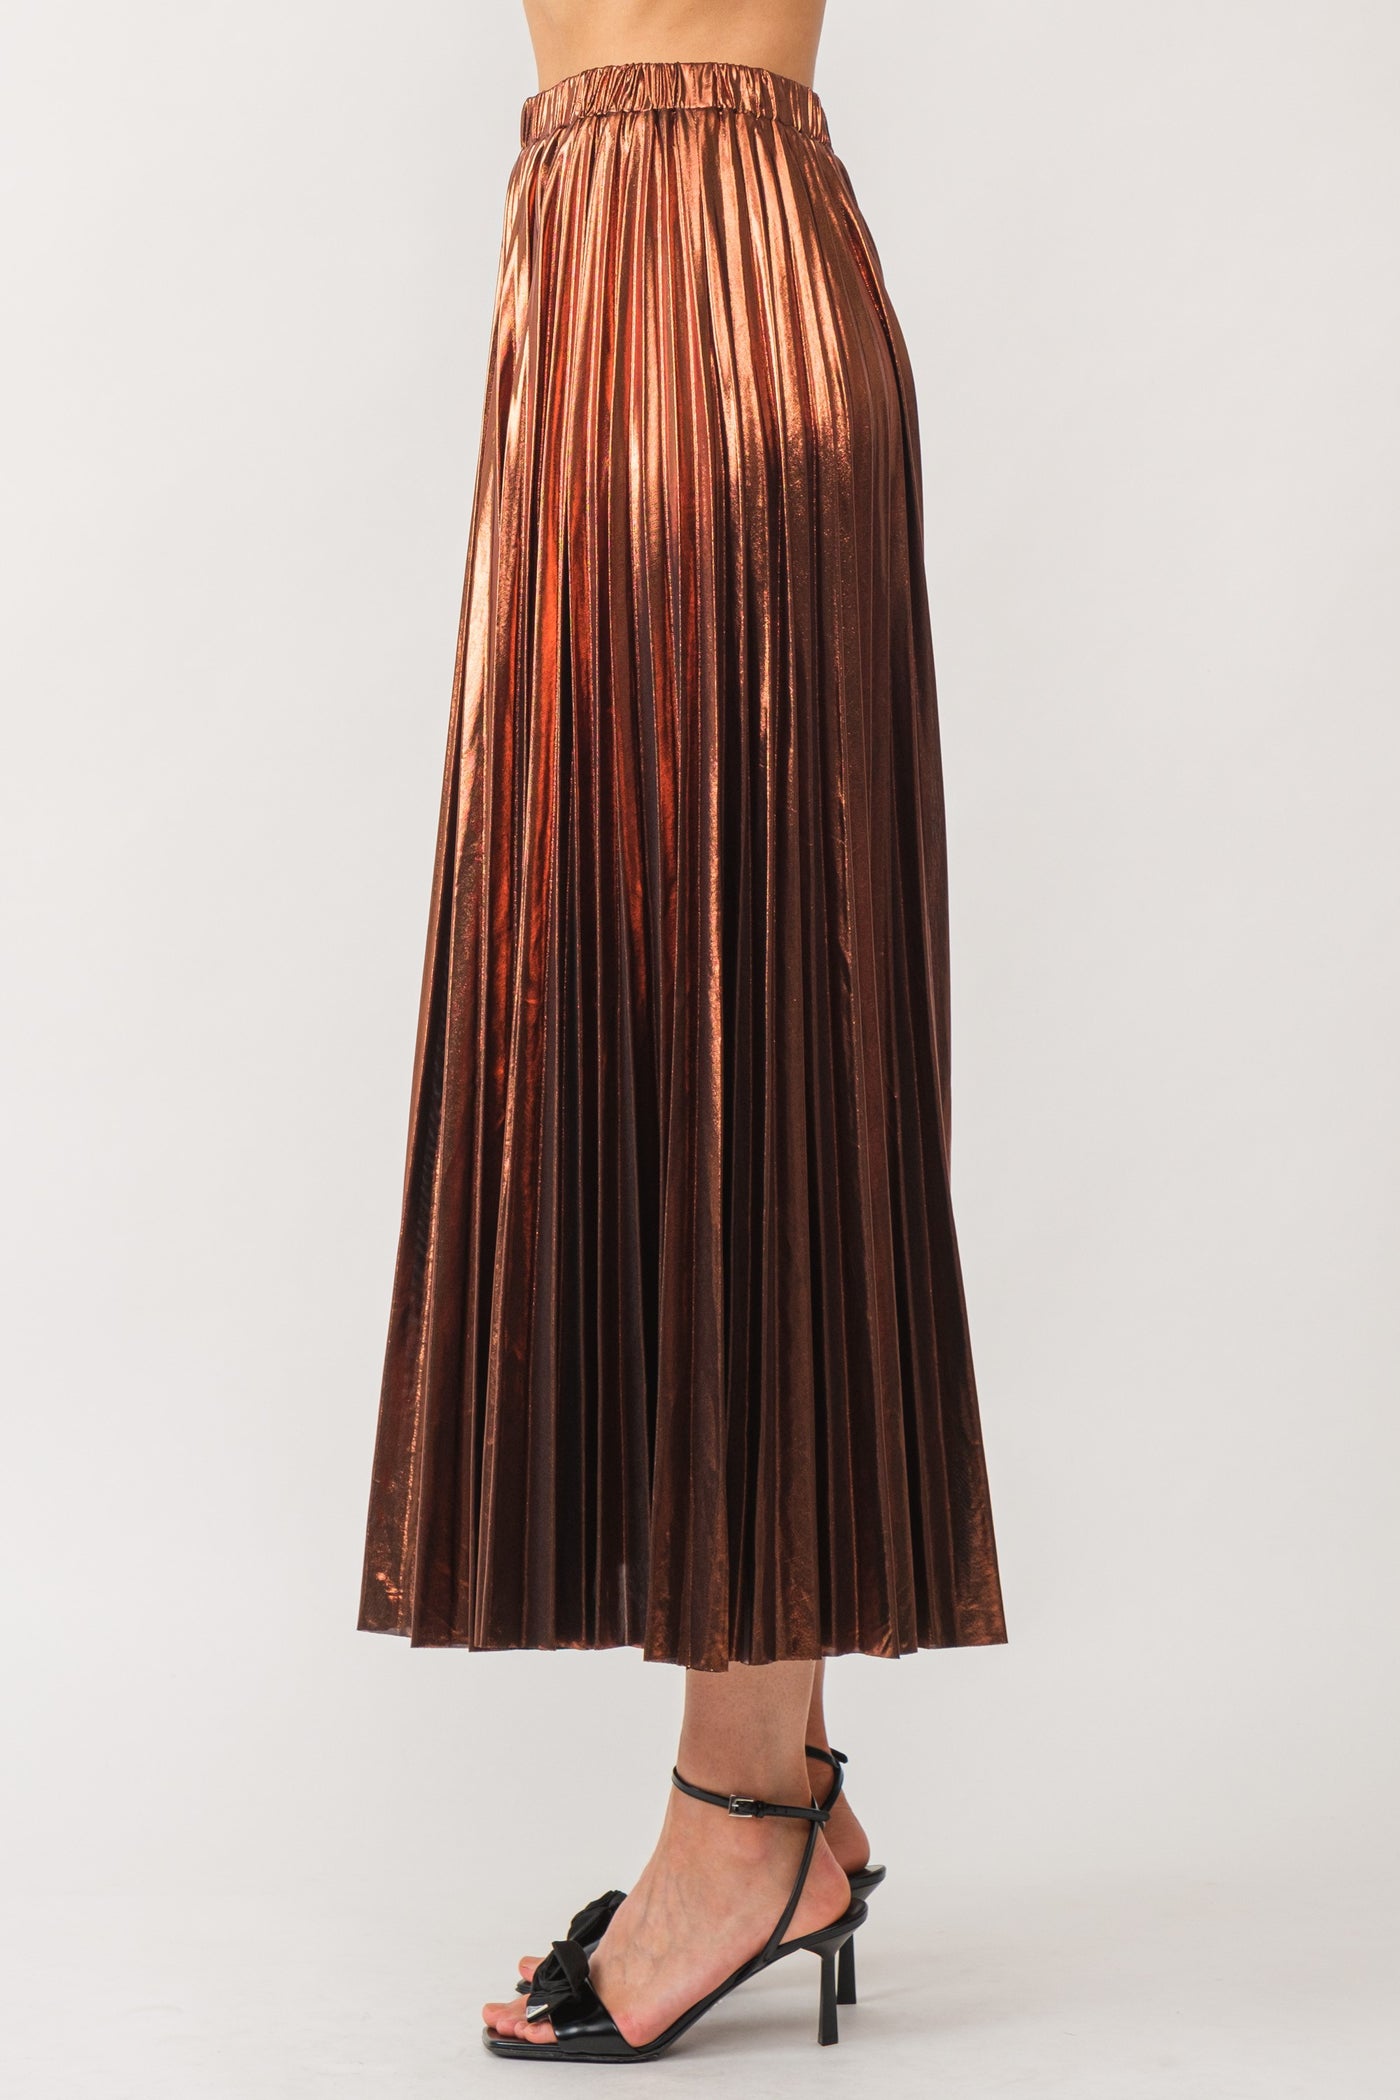 Alessandra Pleated Skirt Brown